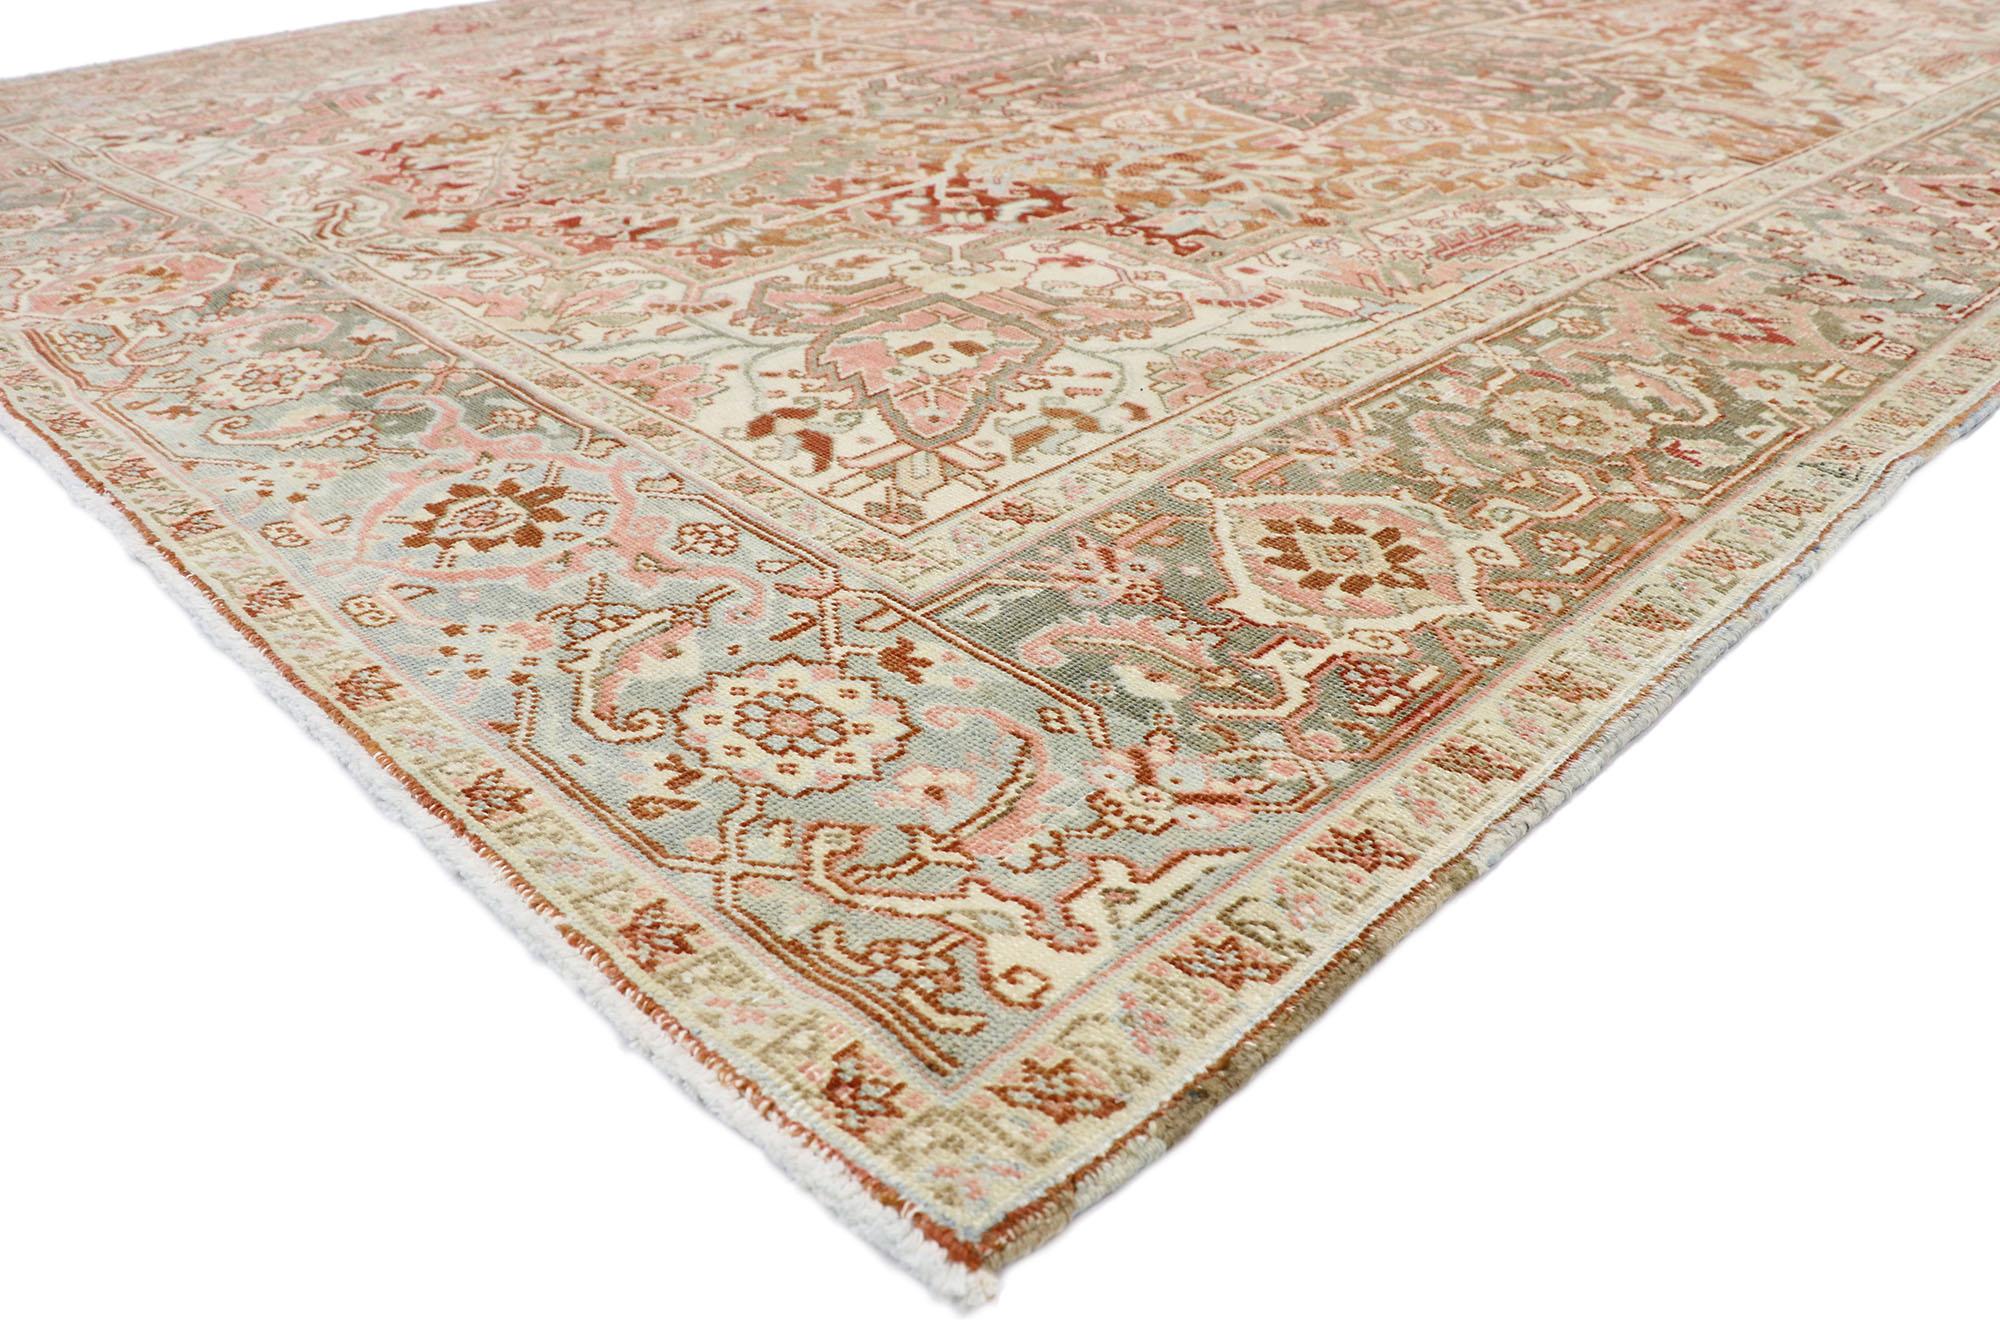 52667, tapis persan ancien en détresse de style Arts & Crafts rustique. Ce tapis persan ancien Heriz en laine nouée à la main présente un grand médaillon central octofeuille avec des pendentifs en forme de palmettes flamboyantes flottant sur un